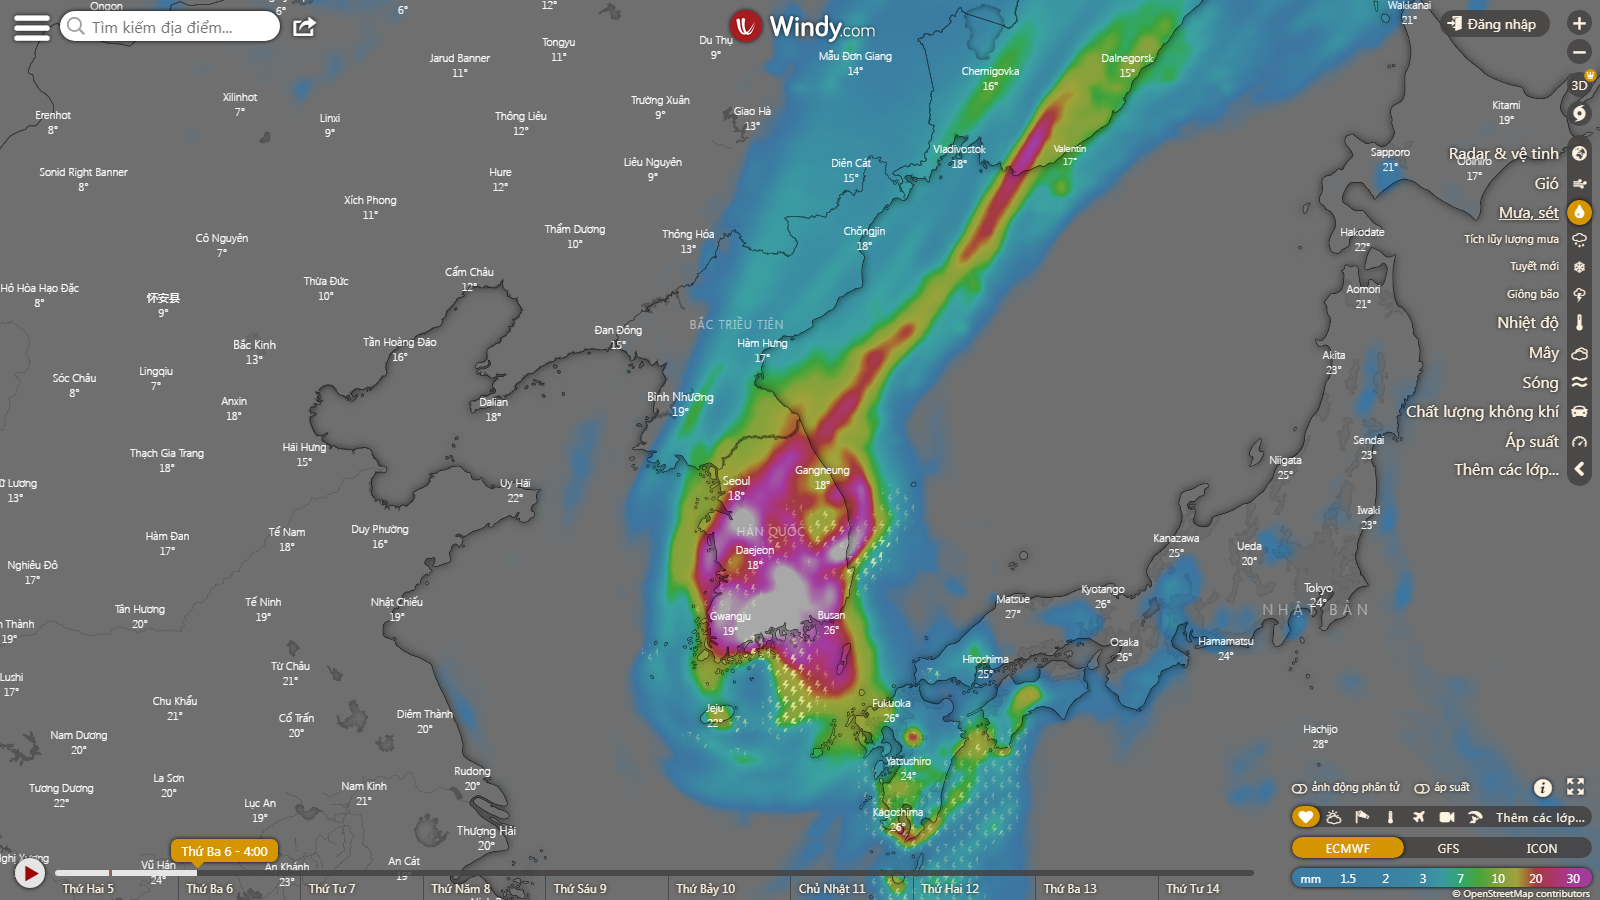 Bản đồ dự báo mưa do siêu bão Hinnamnor. Tuy nhiên, may mắn, mưa sẽ dứt nhanh sau khi bão quét qua Hàn Quốc vào ngày 6/9 - Ảnh: Windy